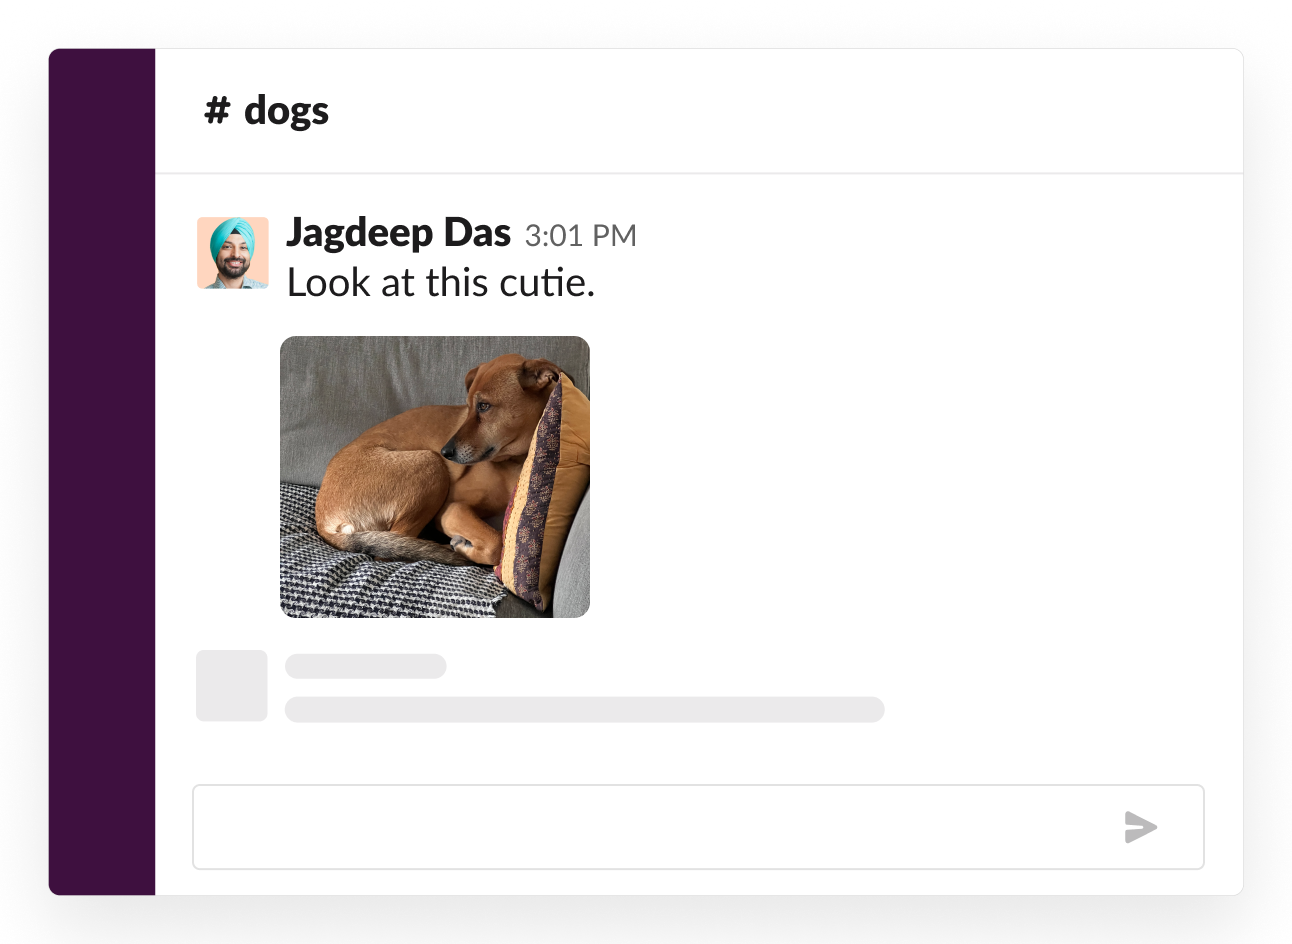 關於狗的社交頻道範例：有人在頻道中分享了自己的小狗的可愛照片